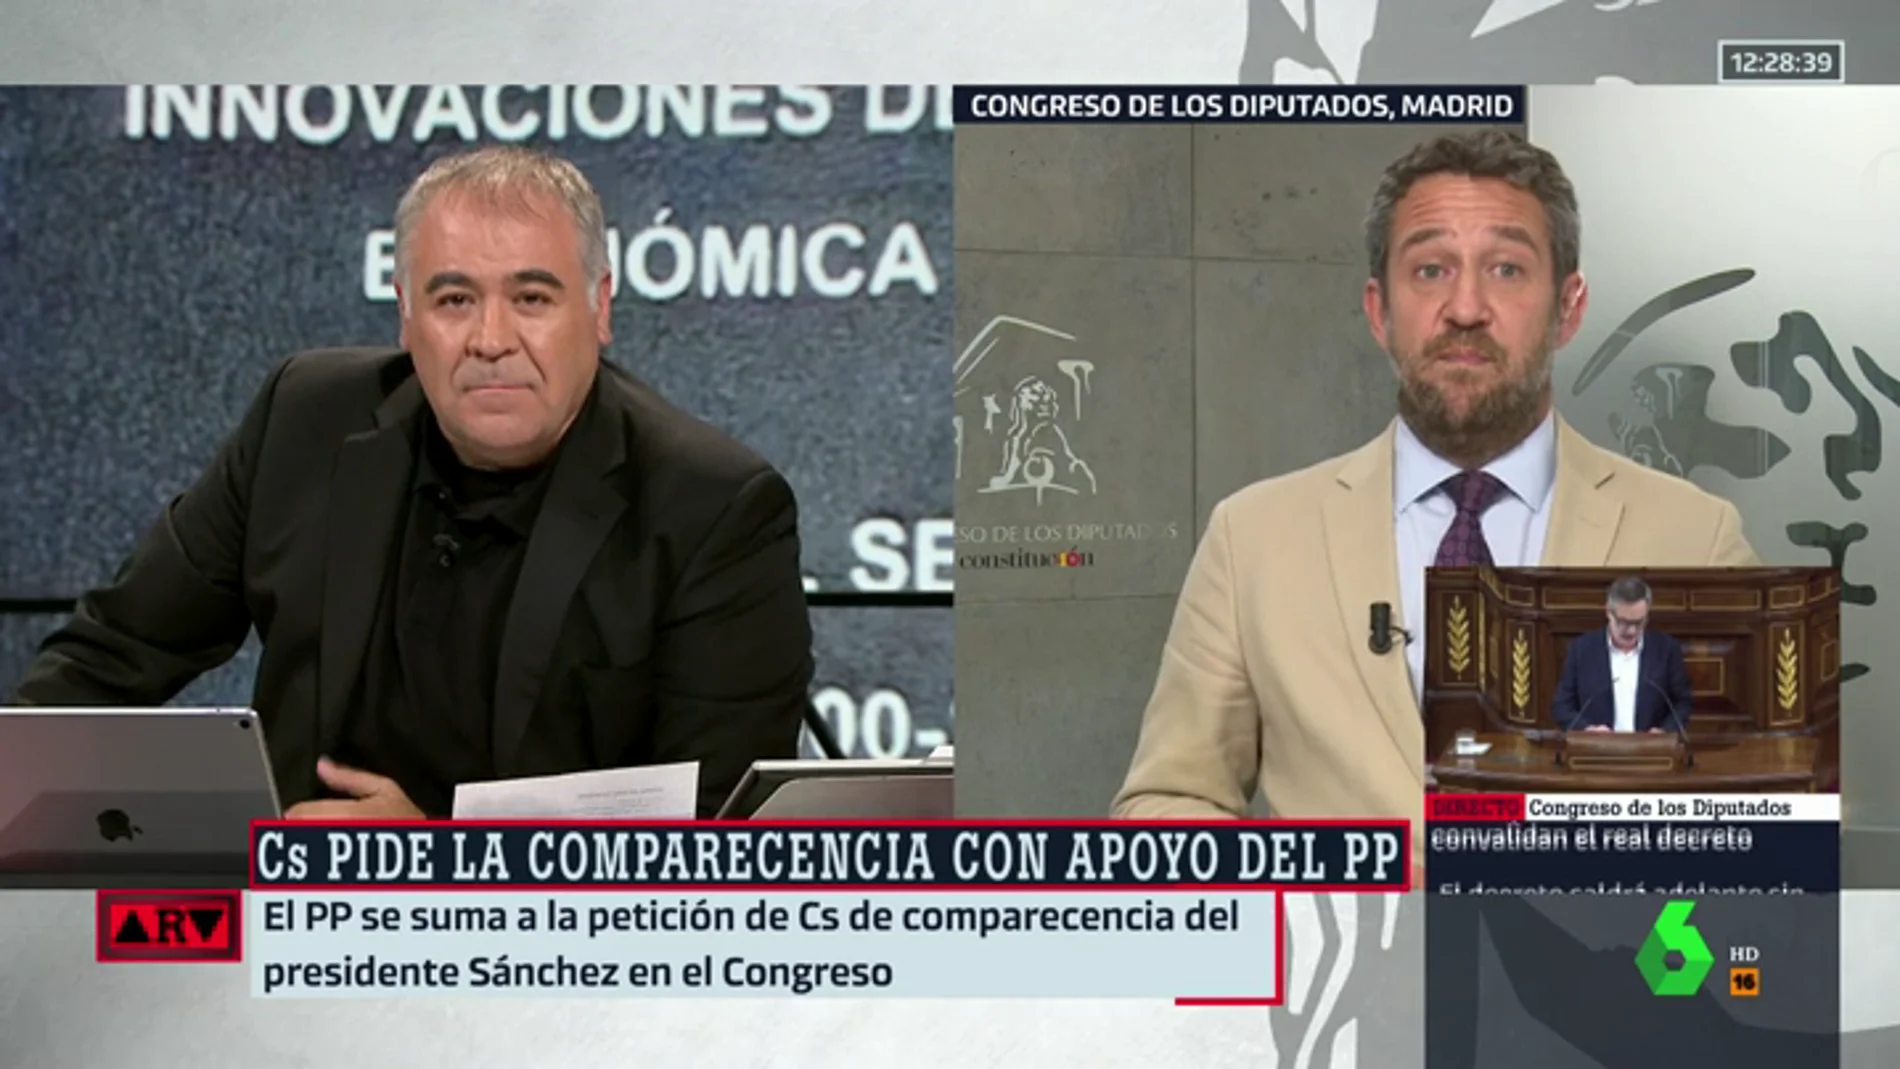 Jaime de Olano: "Solicitaremos la comparecencia en el Congreso para que Sánchez dé las explicaciones que se niega a dar voluntariamente"